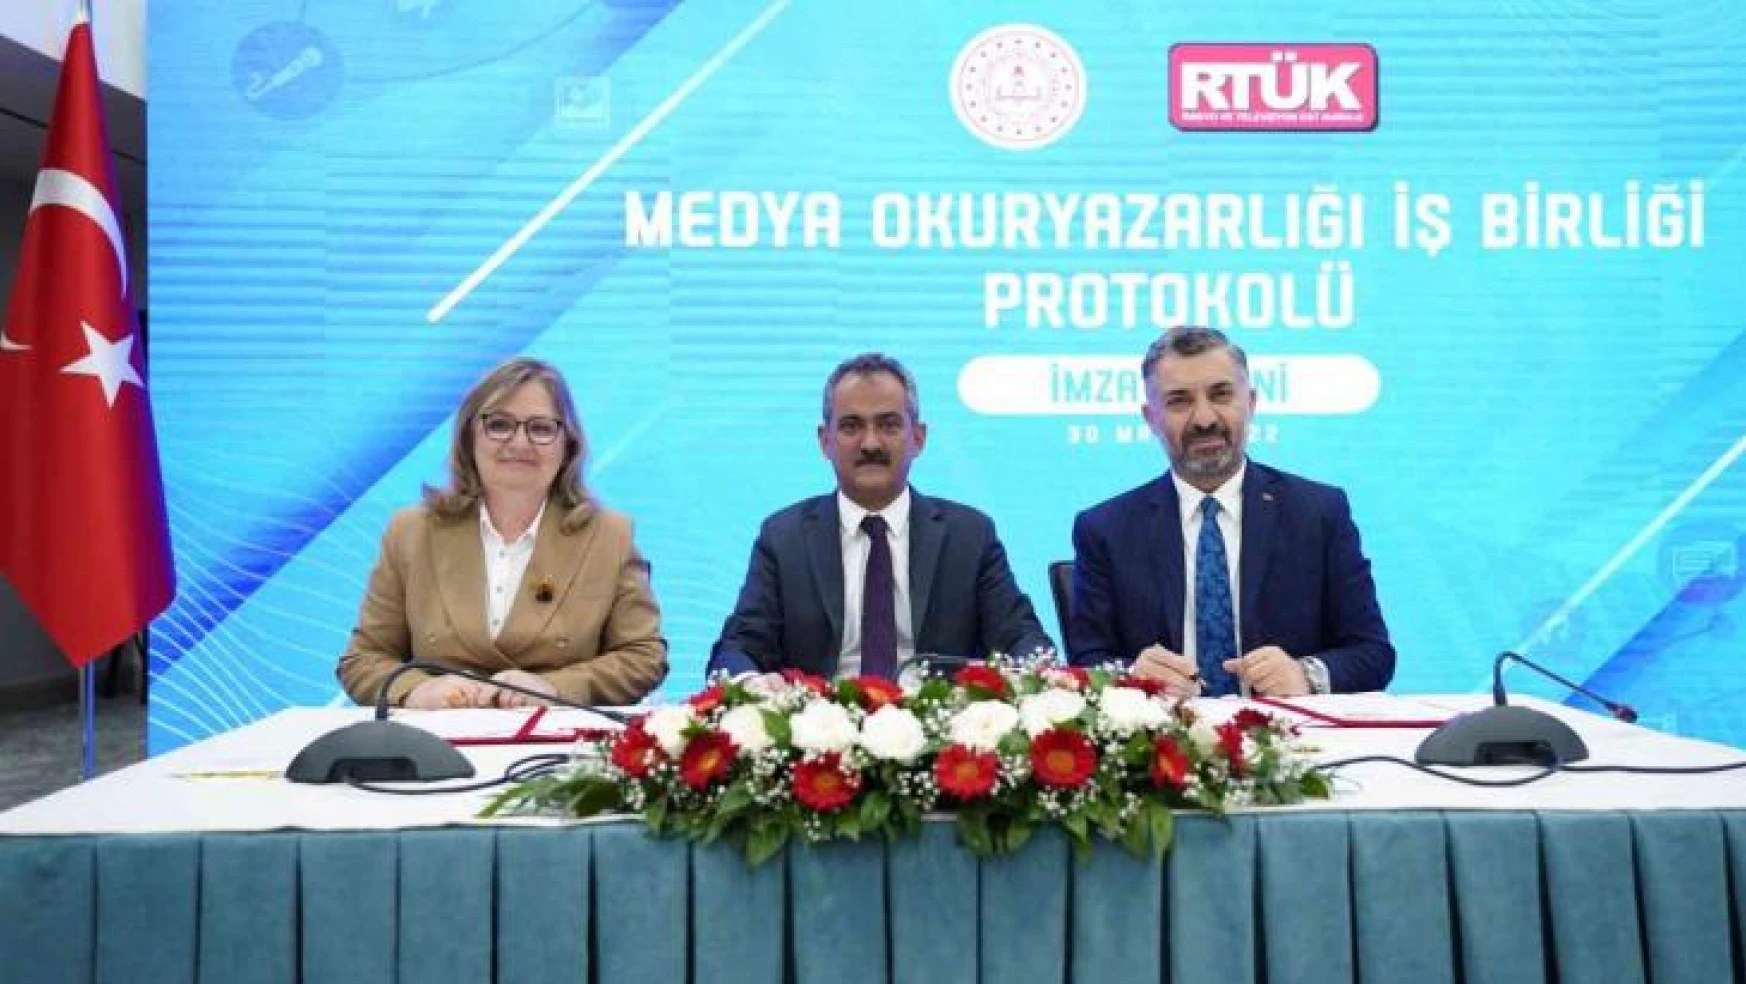 MEB ile RTÜK arasında 'Medya Okuryazarlığı İş Birliği Protokolü' imzalandı